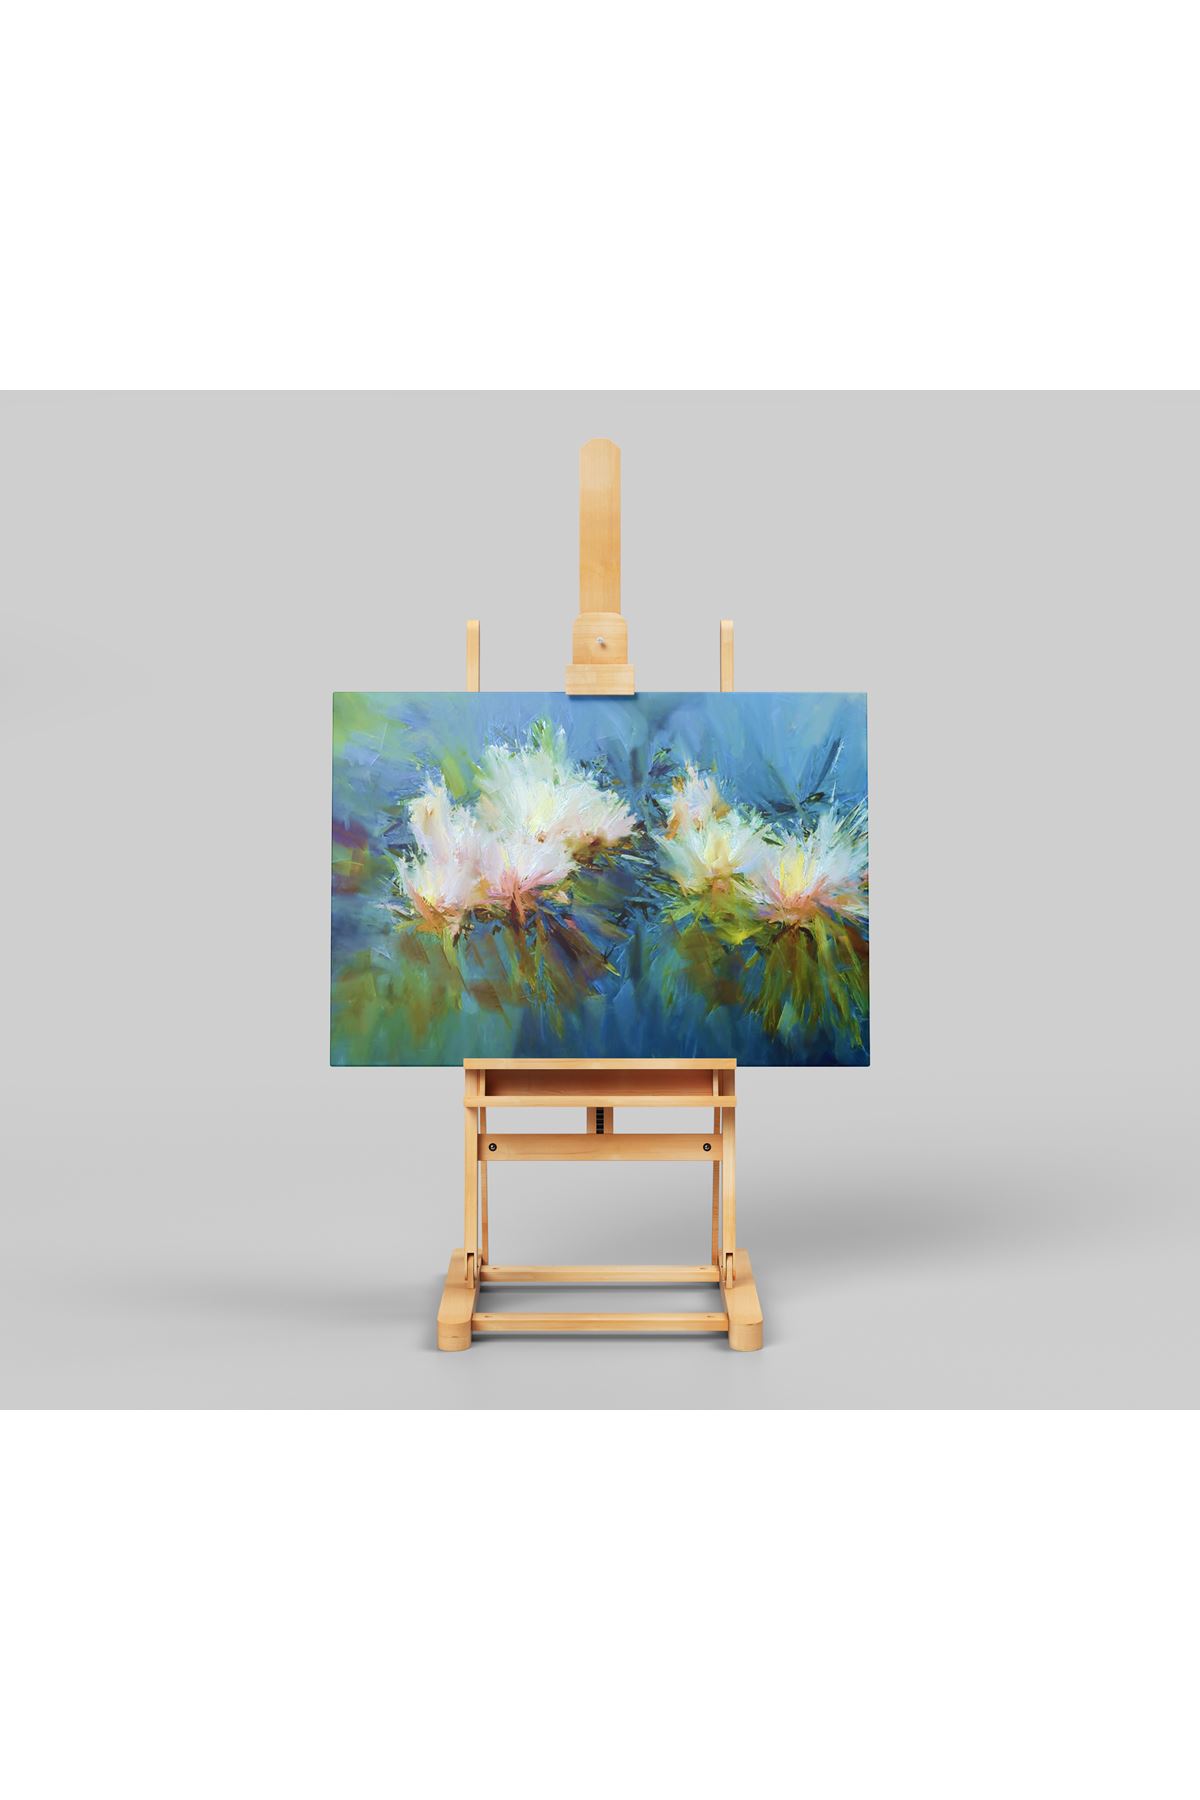 Soyut Renklerin Karmaşasında Nilüfer Çiçeği, "Abstract Water Lillies" Dijital Baskı Kanvas Tablo